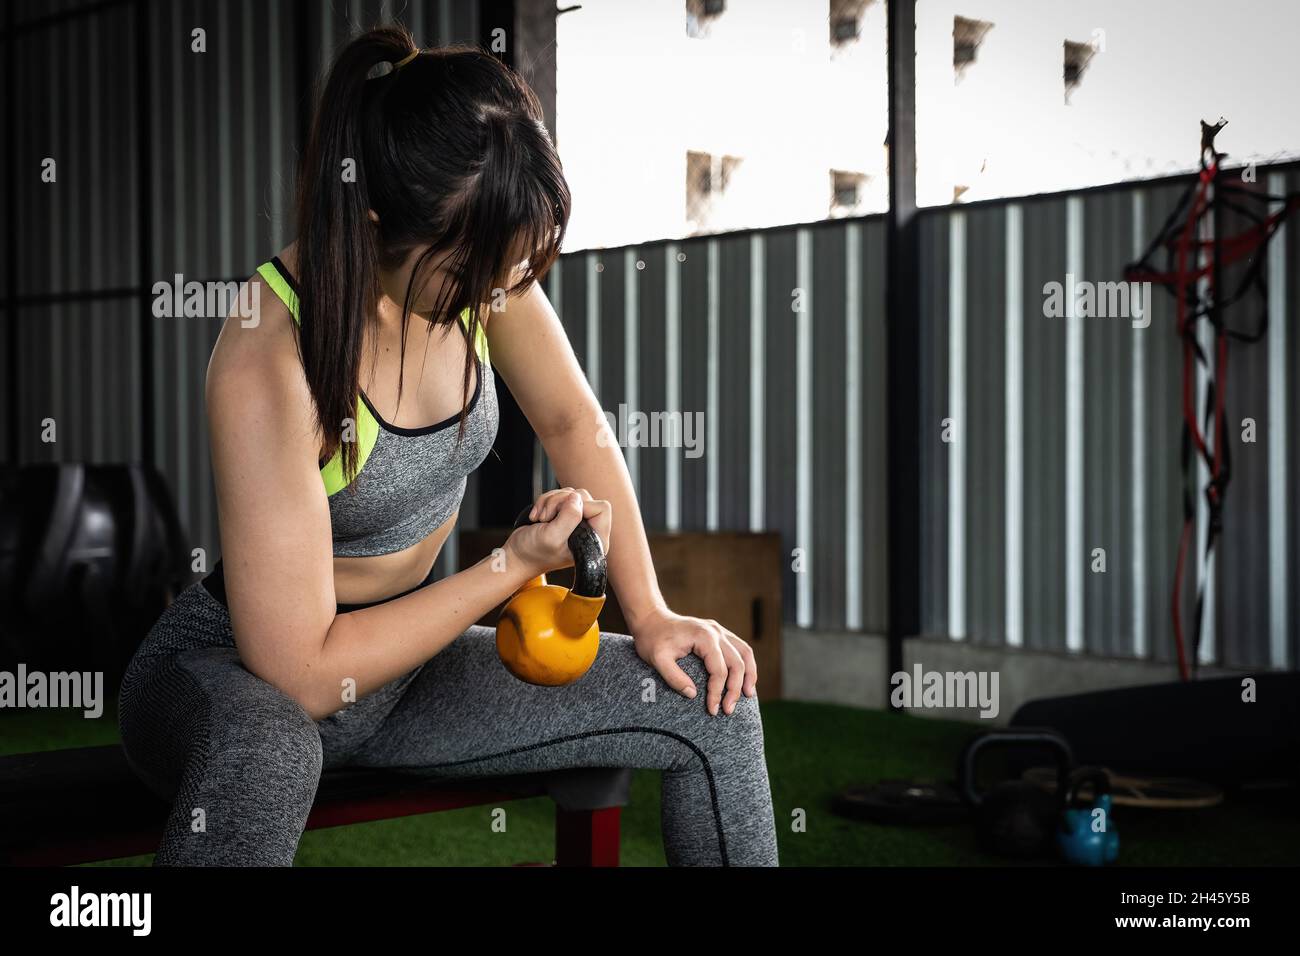 Le giovani donne asiatiche godono di esercitarsi con il campanello del bollitore di sollevamento con una mano alla palestra. concetto di bodybuilding di sport. Foto Stock